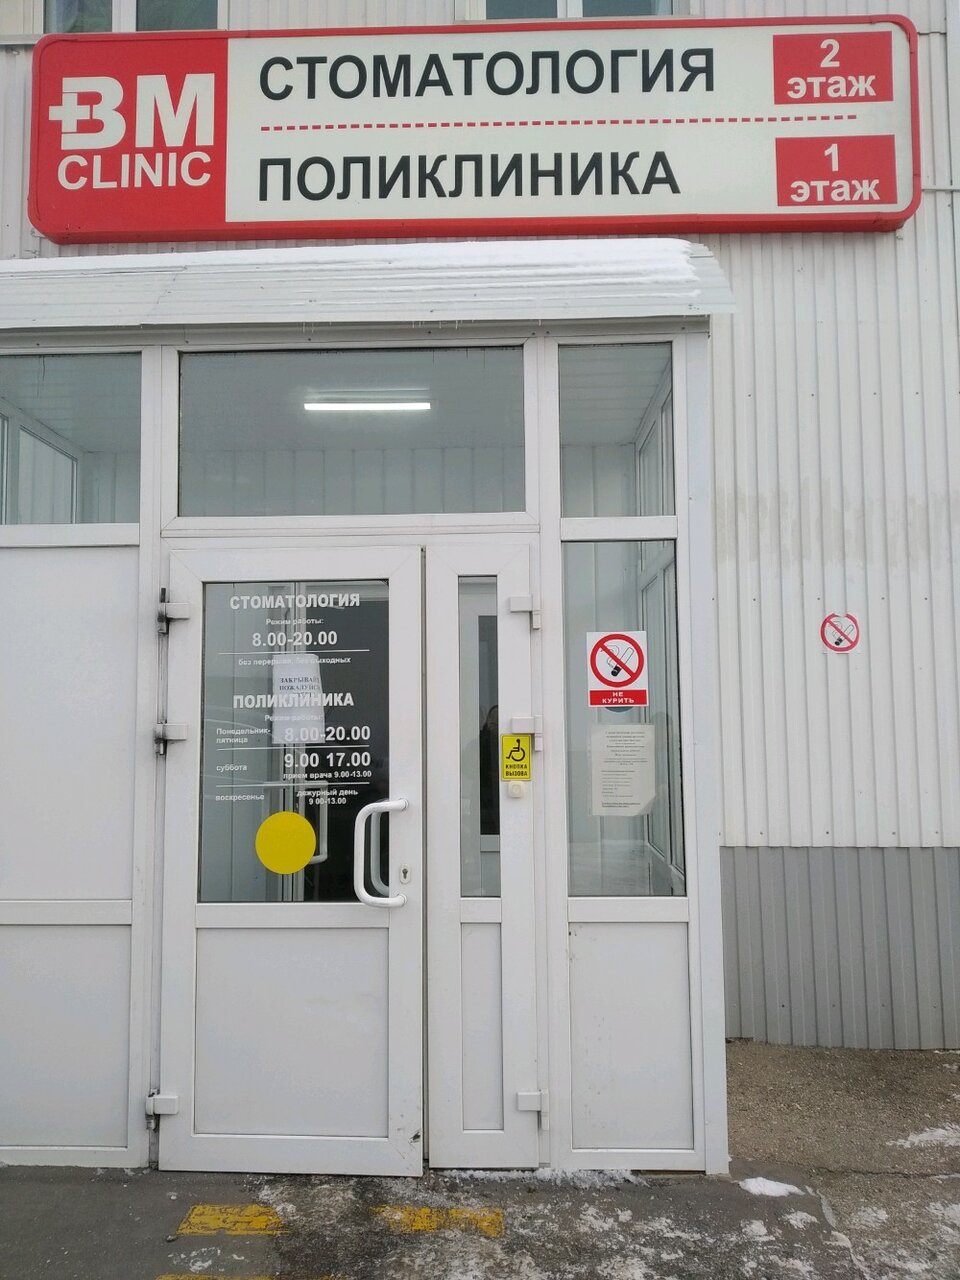 Клиника вм